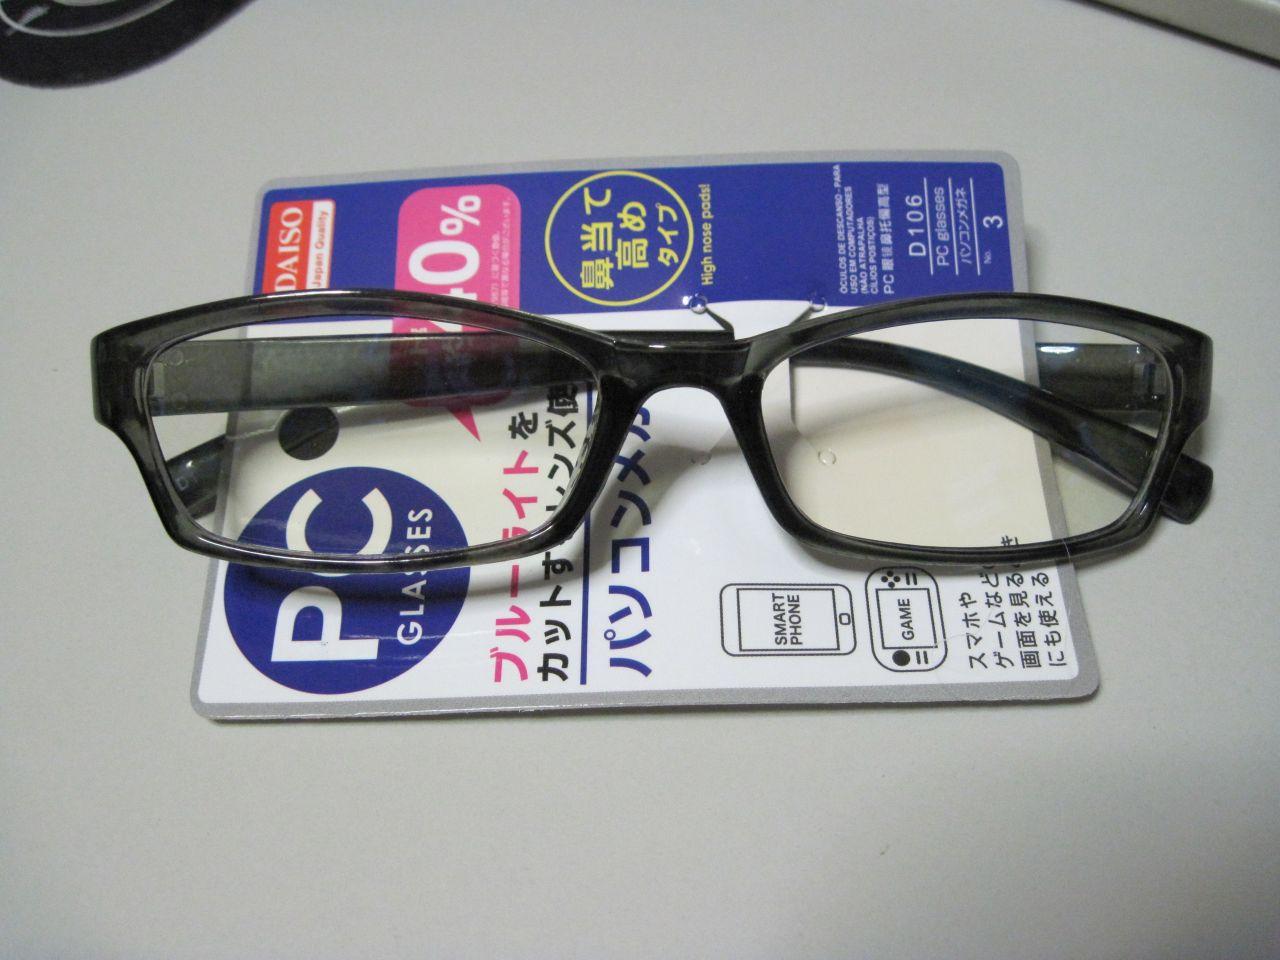 ブルーライトカットメガネがザ ダイソーで108円でした ブルーライトカットメガネ ザ ダイソーのレビュー ジグソー レビューメディア